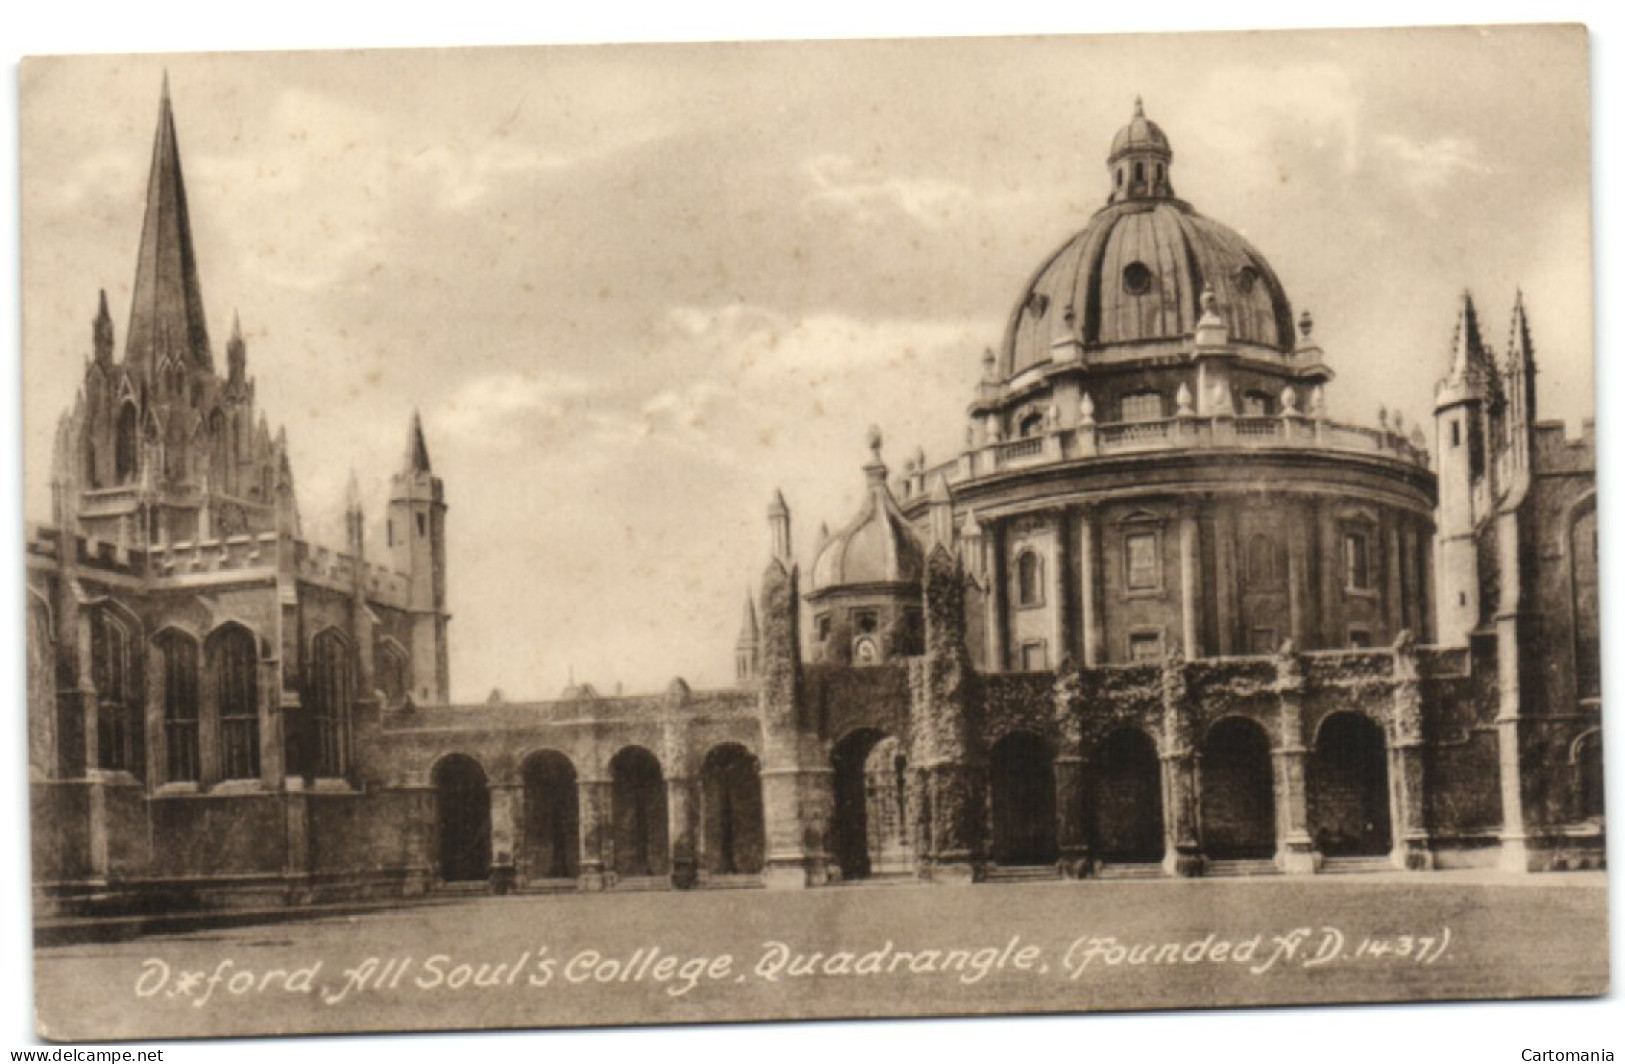 Oxford All Soul's College - Quadrangle - Oxford